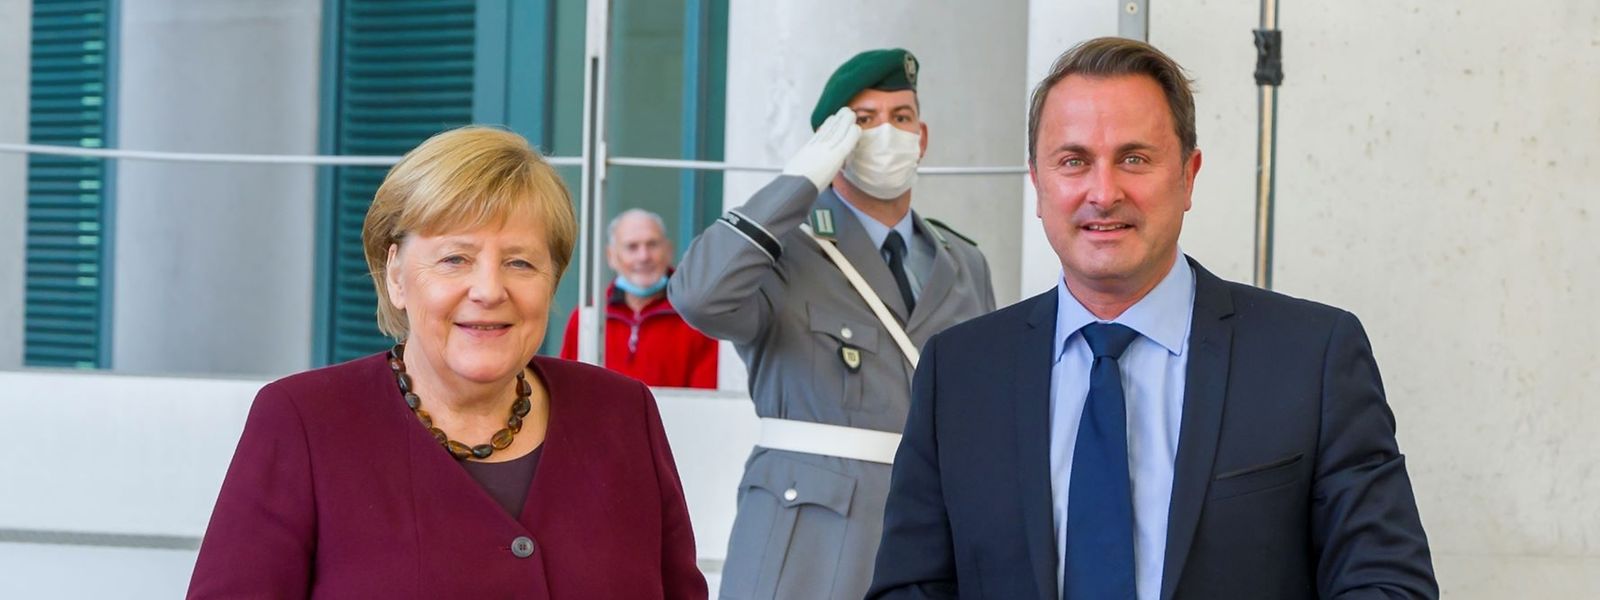 Angela Merkel a reçu la grand-croix de l’ordre de Mérite du Grand-Duché de Luxembourg à l'occasion de ce rendez-vous matinal.